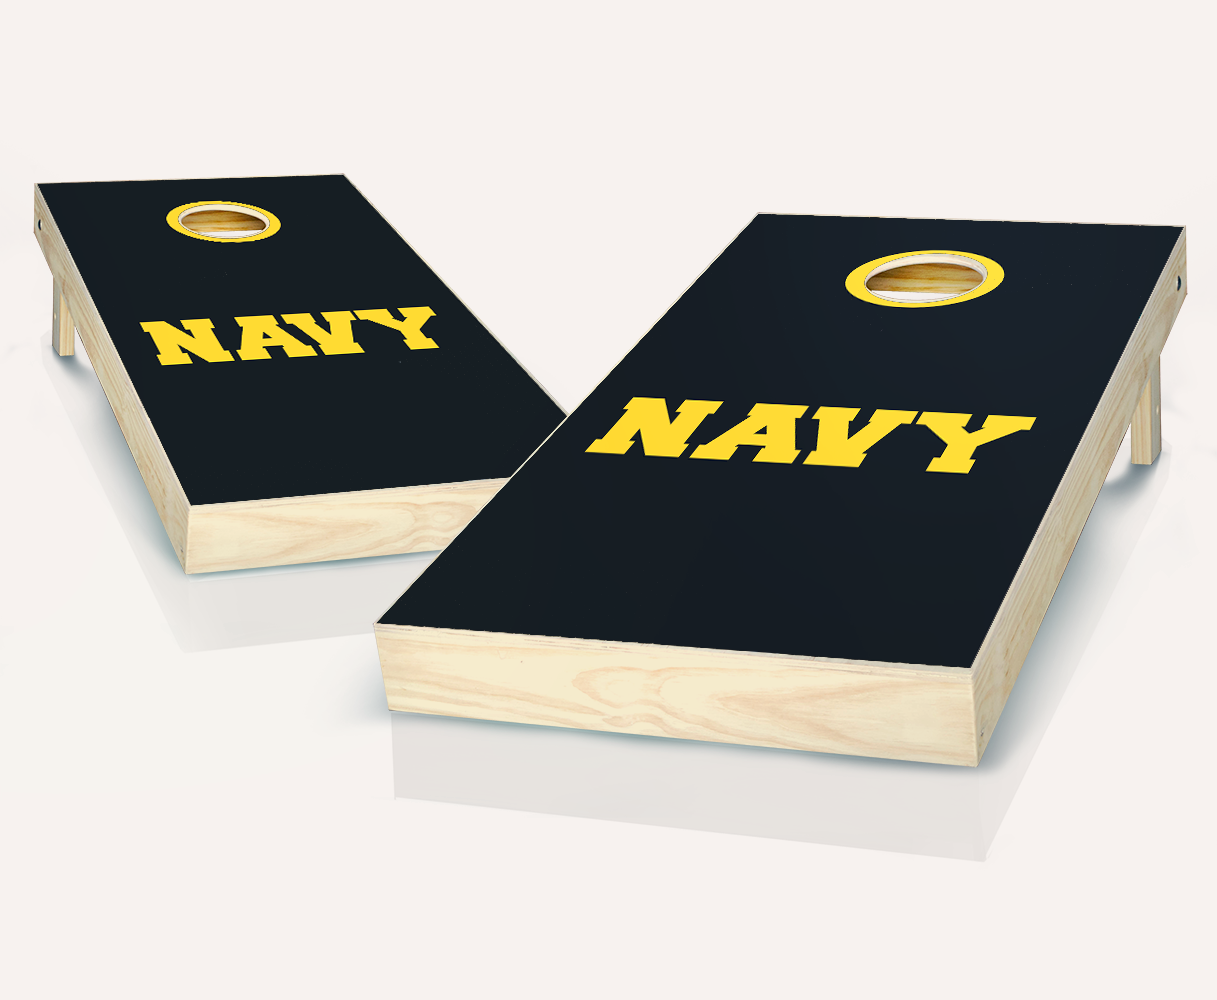 US Navy Text Cornhole Set